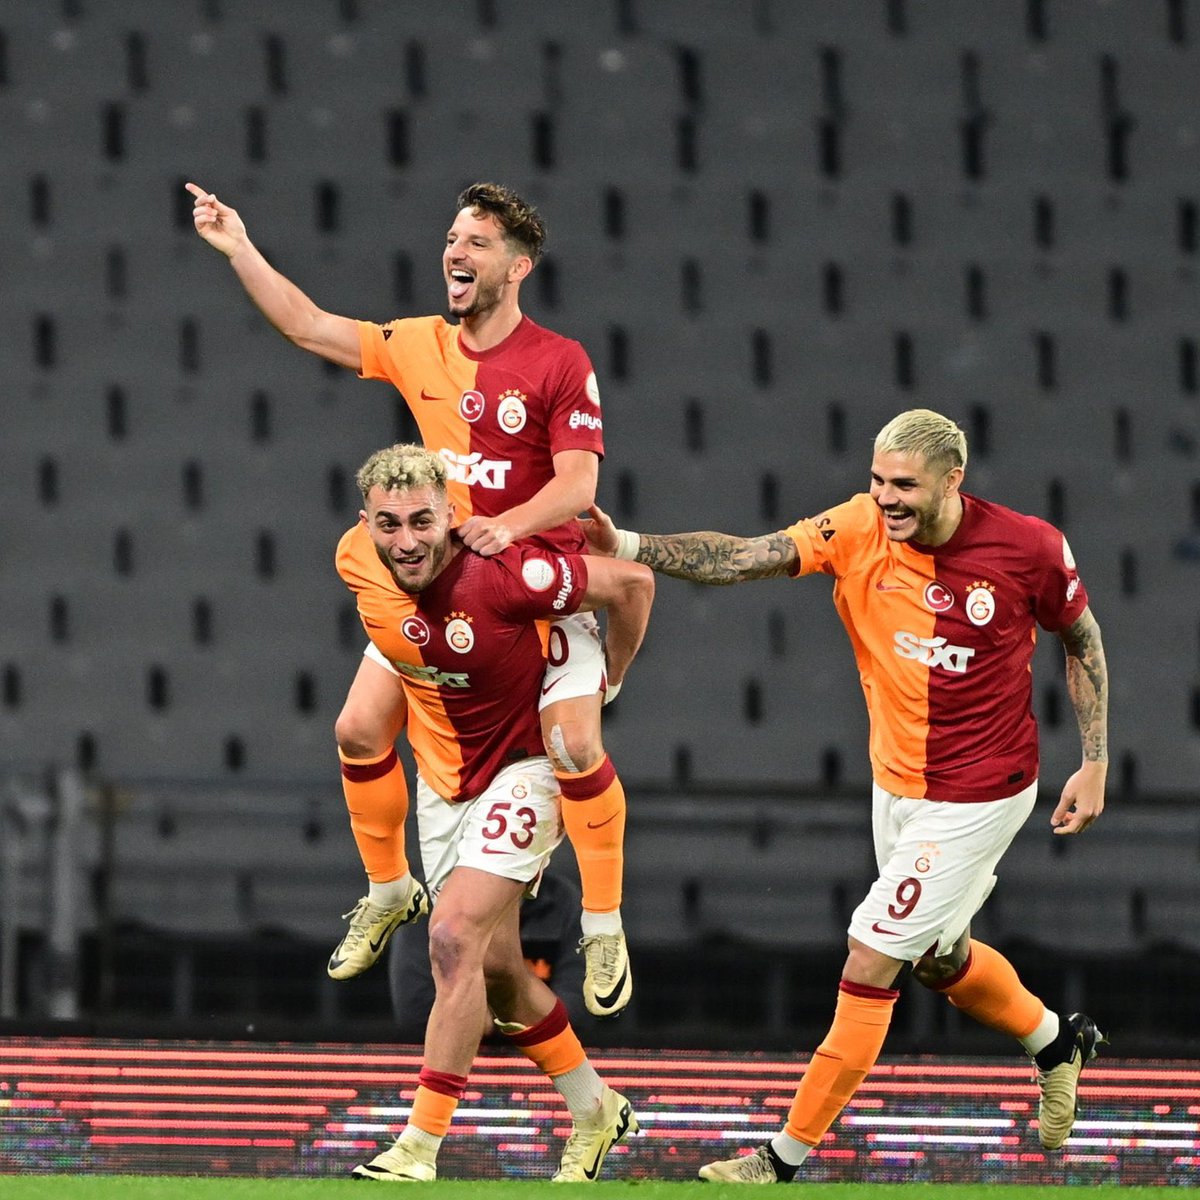 MAÇ SONU CANLI YAYINI BAŞLADI🚨 Galatasaray’da şampiyonluk golü Berkan’dan geldi! Sezona damgayı kim vurdu? Barış Alper Yılmaz! Hemen canlı yayına tıkla gel: youtube.com/live/Ukxvl4Rzk…